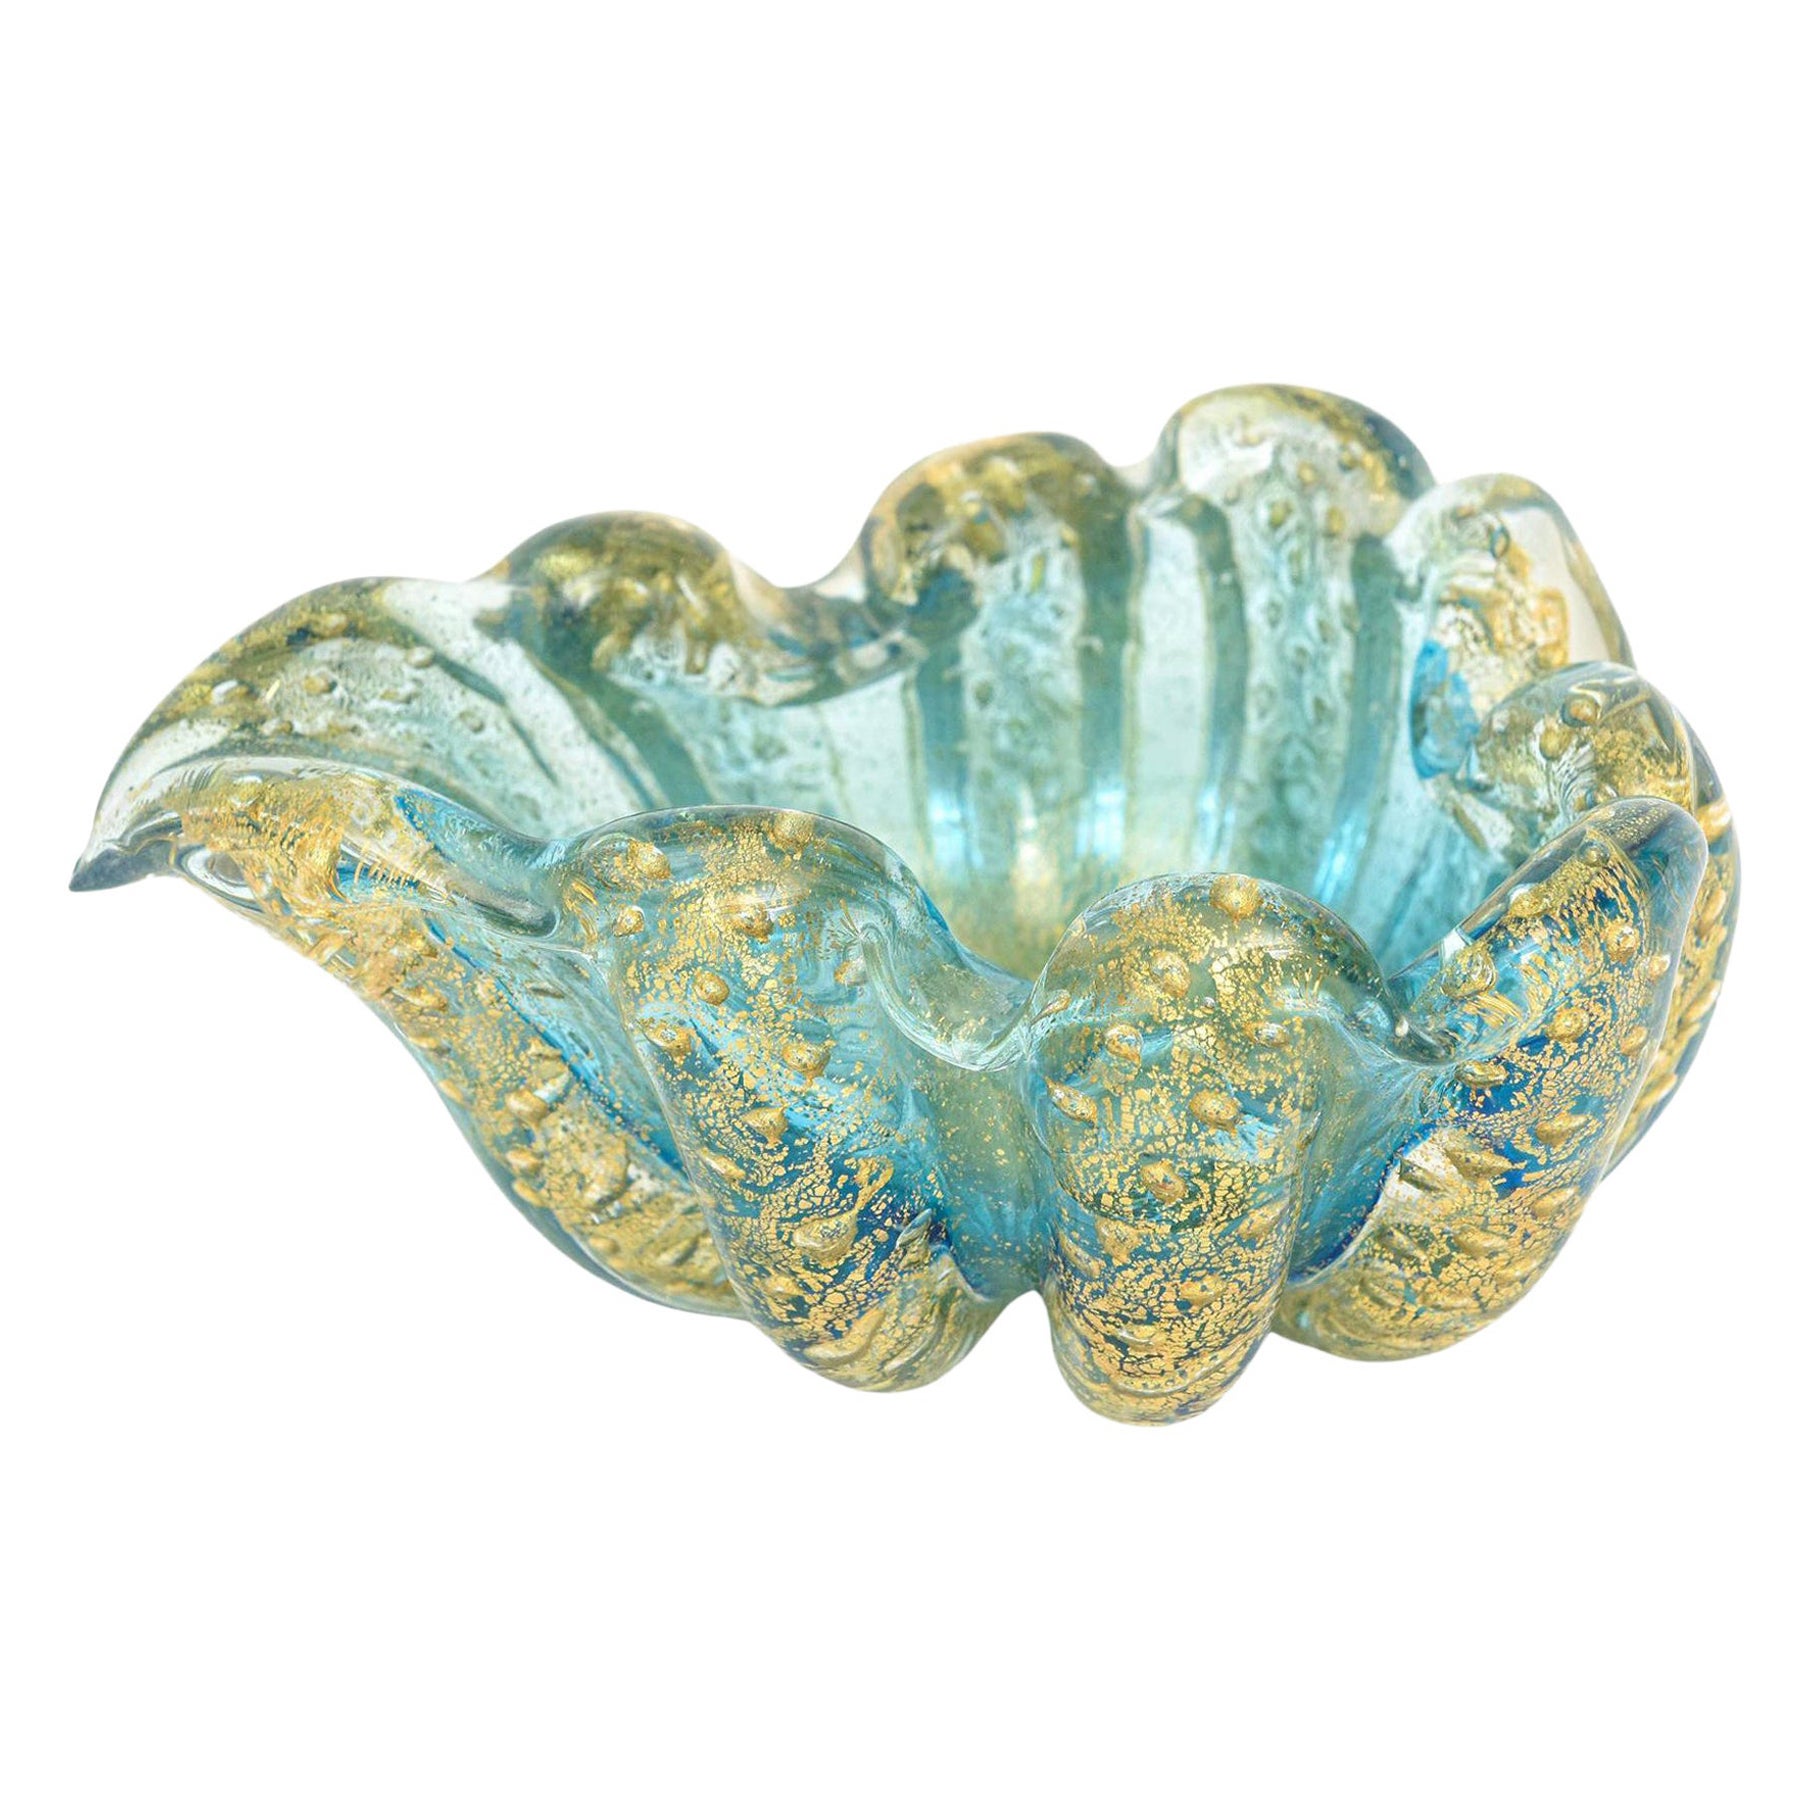 Barovier e Toso Murano Cordonato D' Oro Sea Mist Turquoise and Gold Glass Bowl For Sale